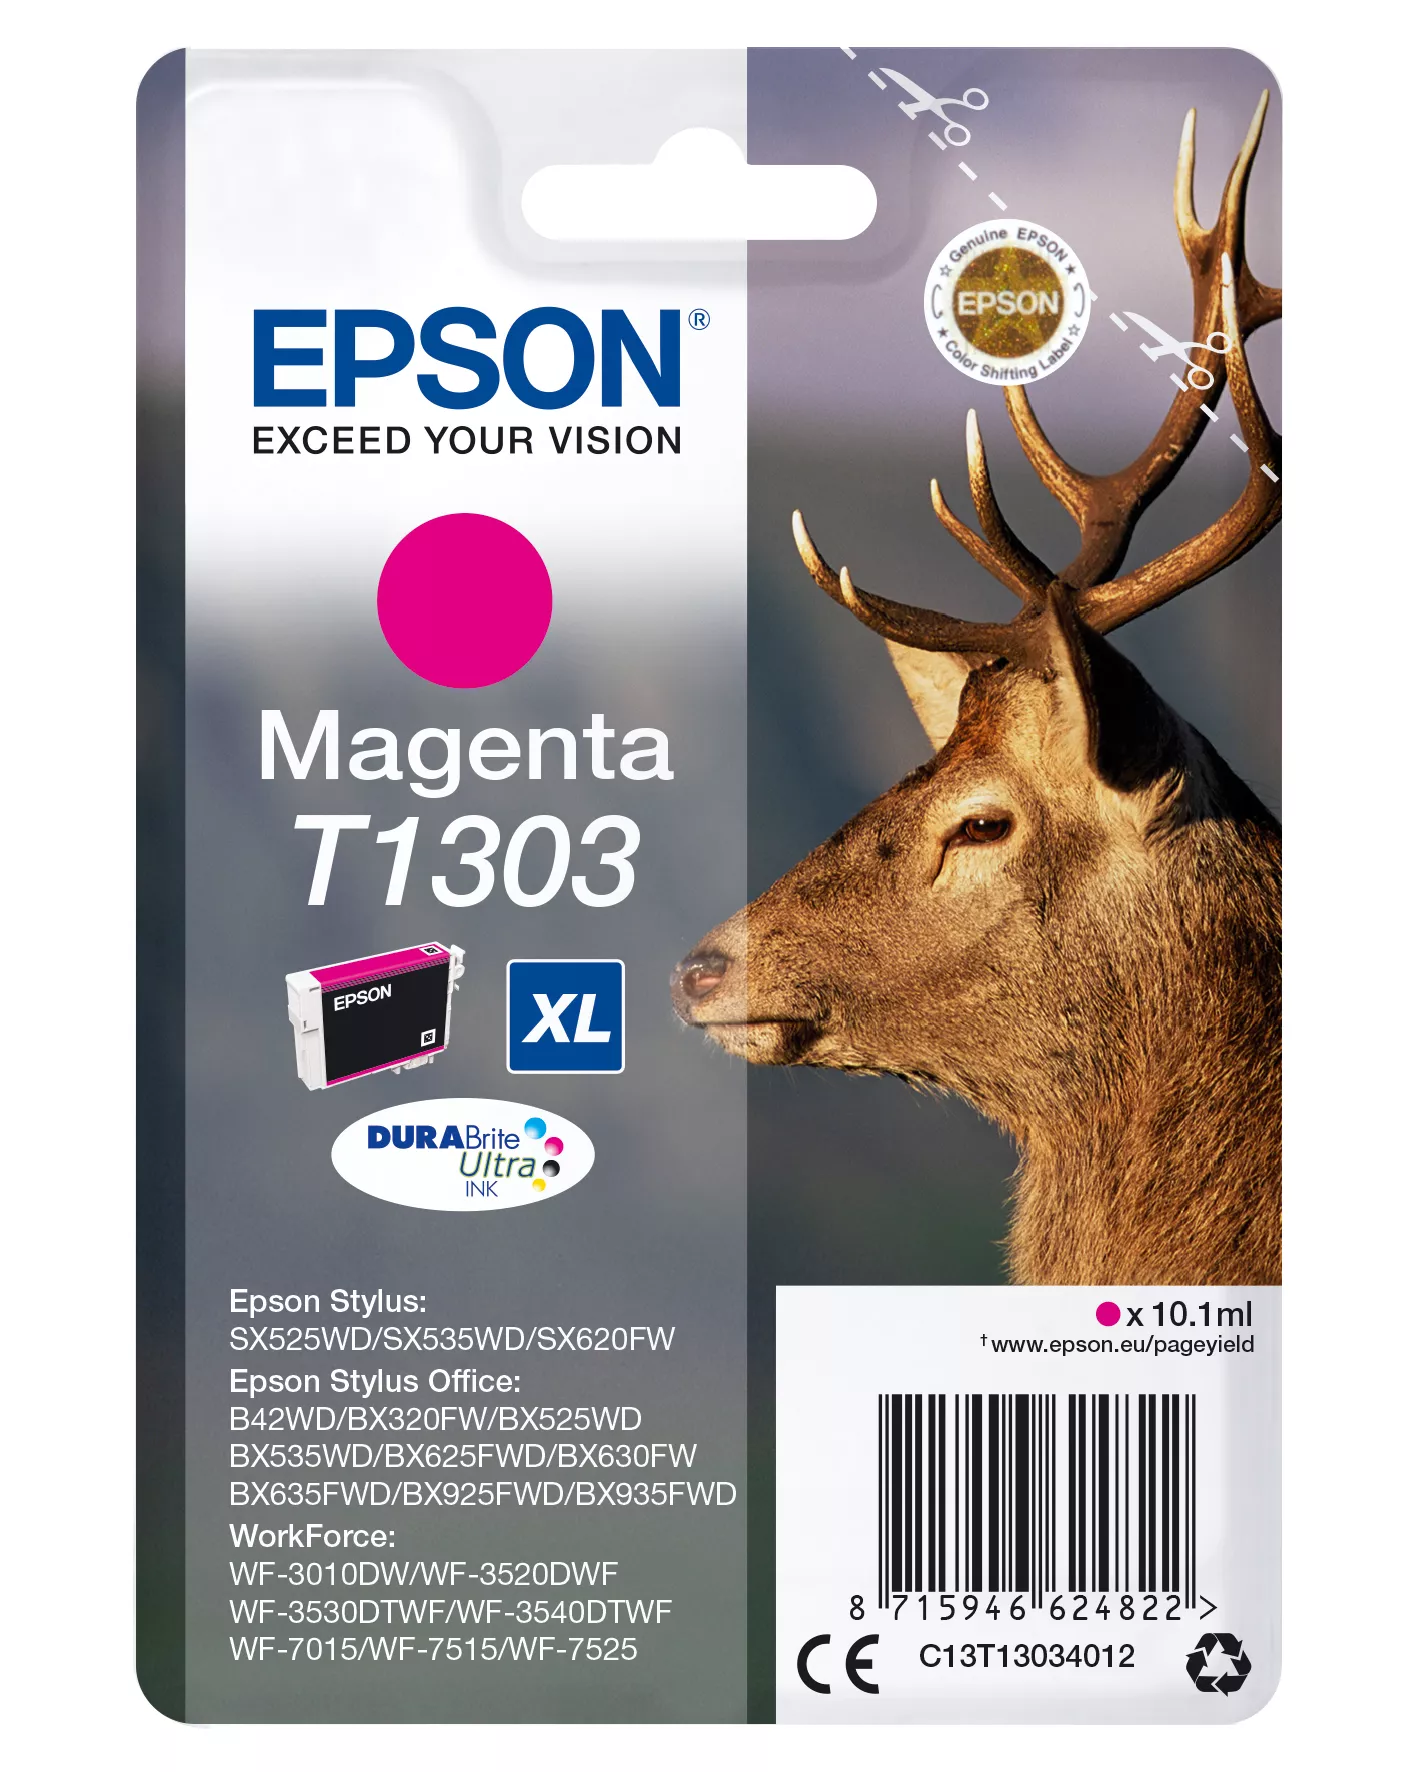 Vente EPSON T1303 cartouche d encre magenta très haute capacité au meilleur prix